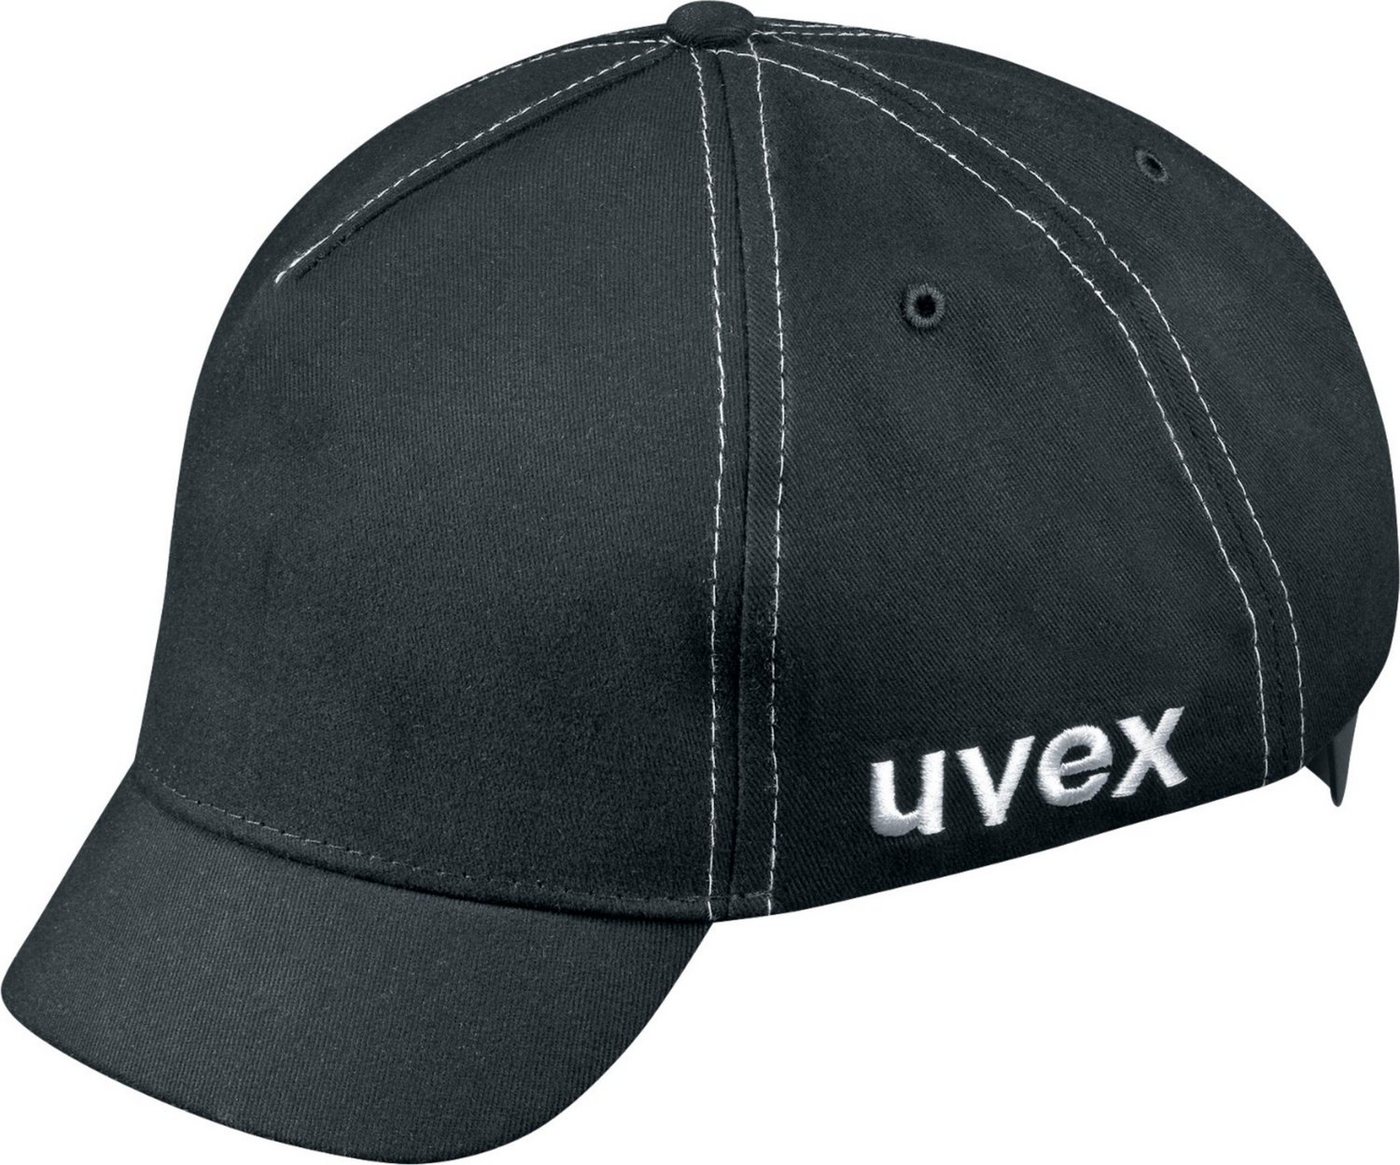 Uvex Kopfschutz von Uvex